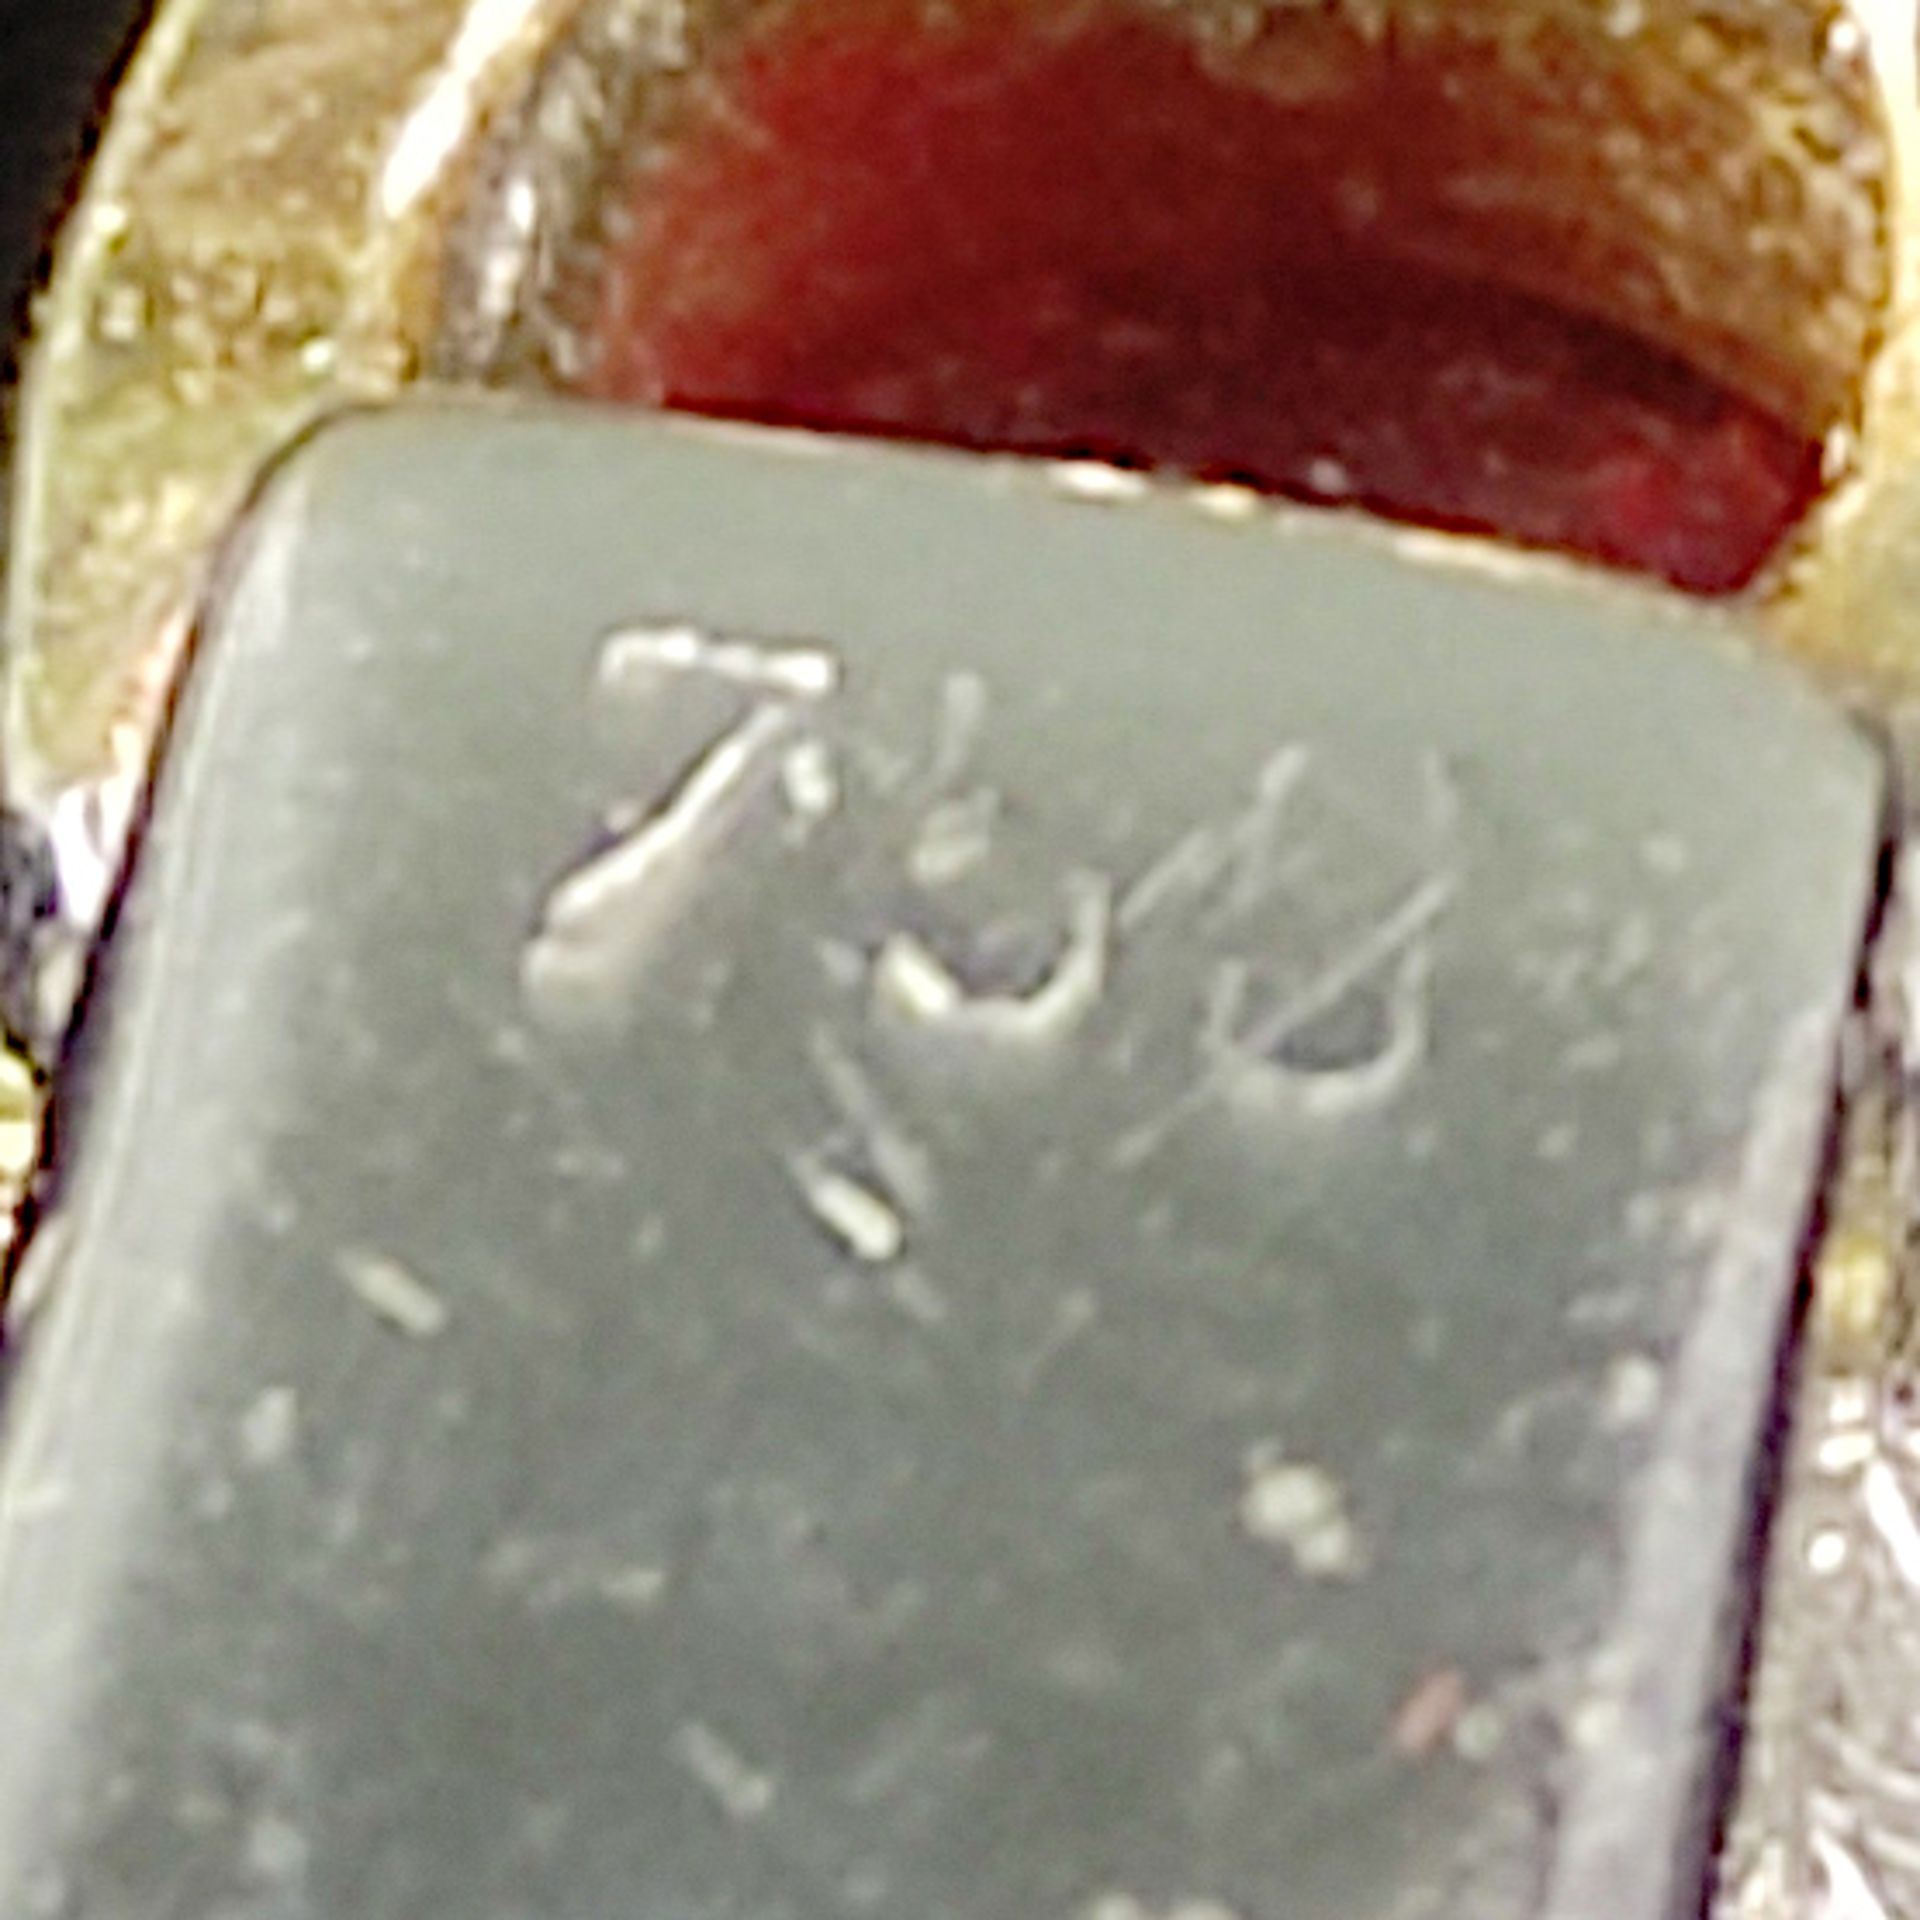 Exklusives Rubin- Brillant- Armband, Gliederarmband, 750/18K Weiß-/ Gelbgold (punziert), 22,1g, bes - Bild 3 aus 3